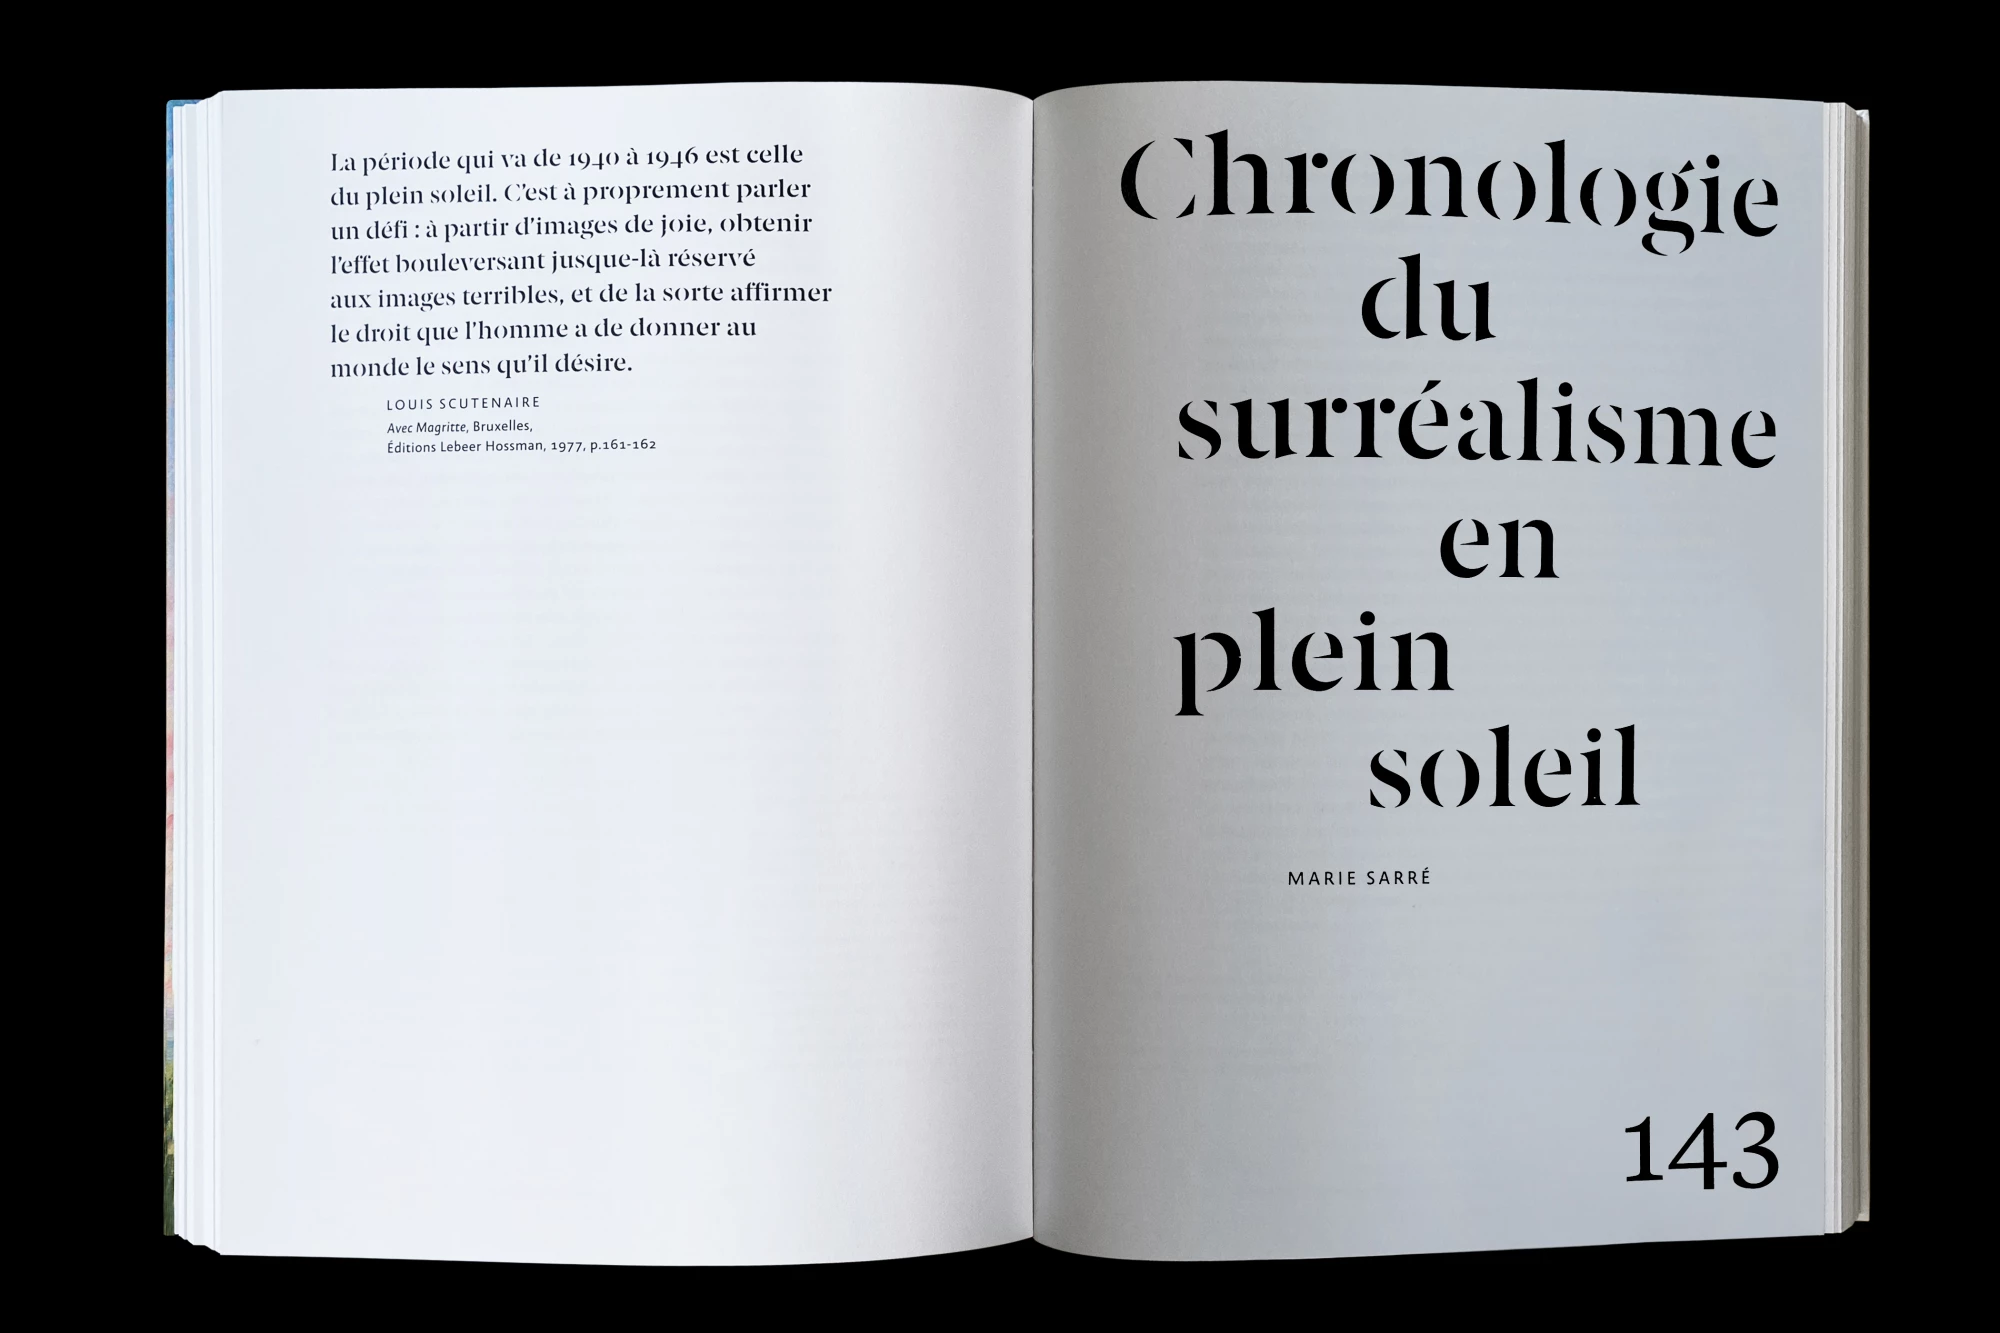 Léo Grunstein - Magritte/Renoir. Le surréalisme en plein soleil, Musée de l’Orangerie, Réunion des musées nationaux – Grand Palais, Édition, 2021